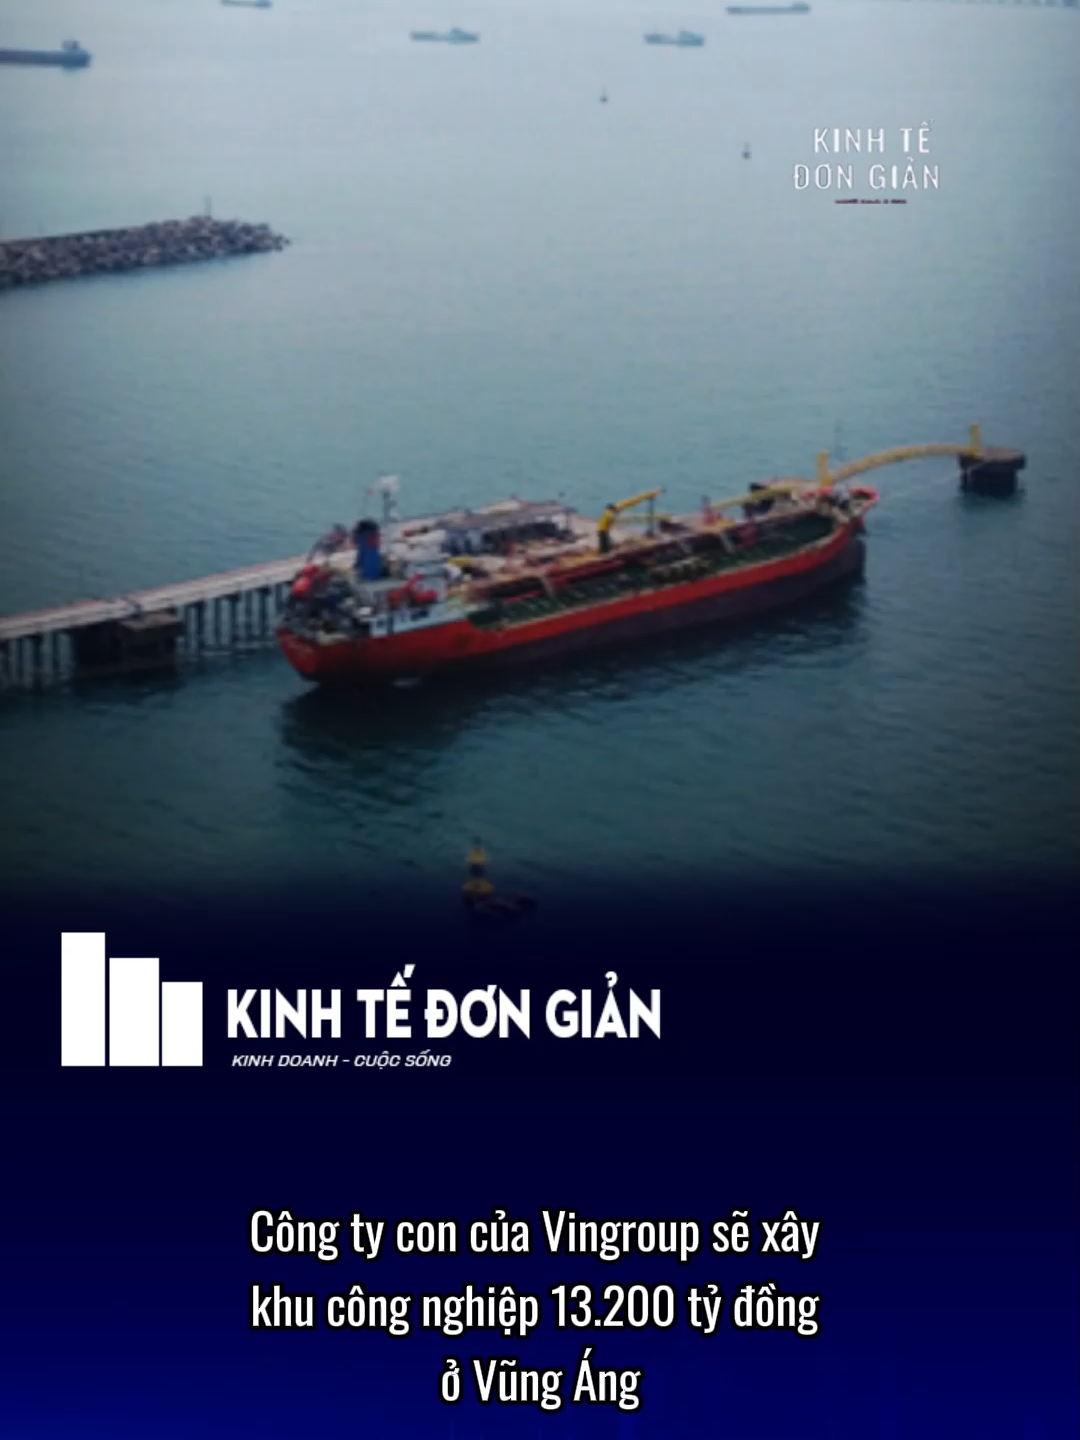 Công ty con của Vingroup sẽ xây khu công nghiệp 13.200 tỷ đồng ở Vũng Áng.  #kinhtedongian #resvietnam